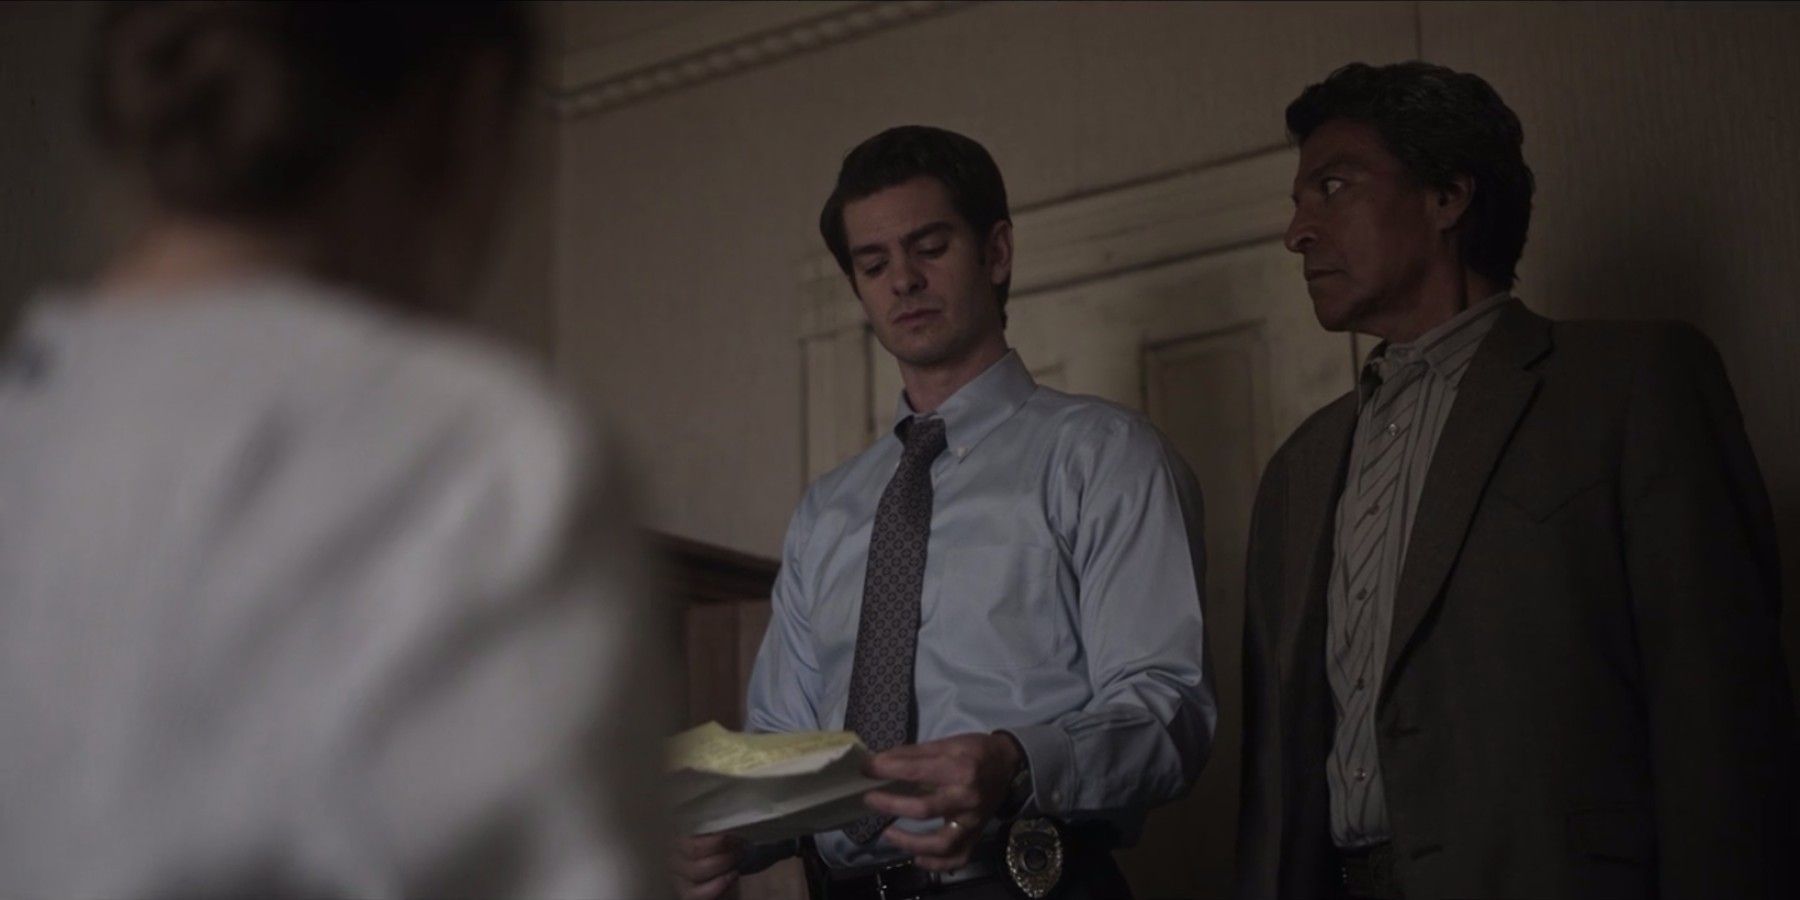 Детективы Пайр (Эндрю Гарфилд) и Таба (Джил Бирмингем) обнаруживают список имен в «Под знаменем небес».